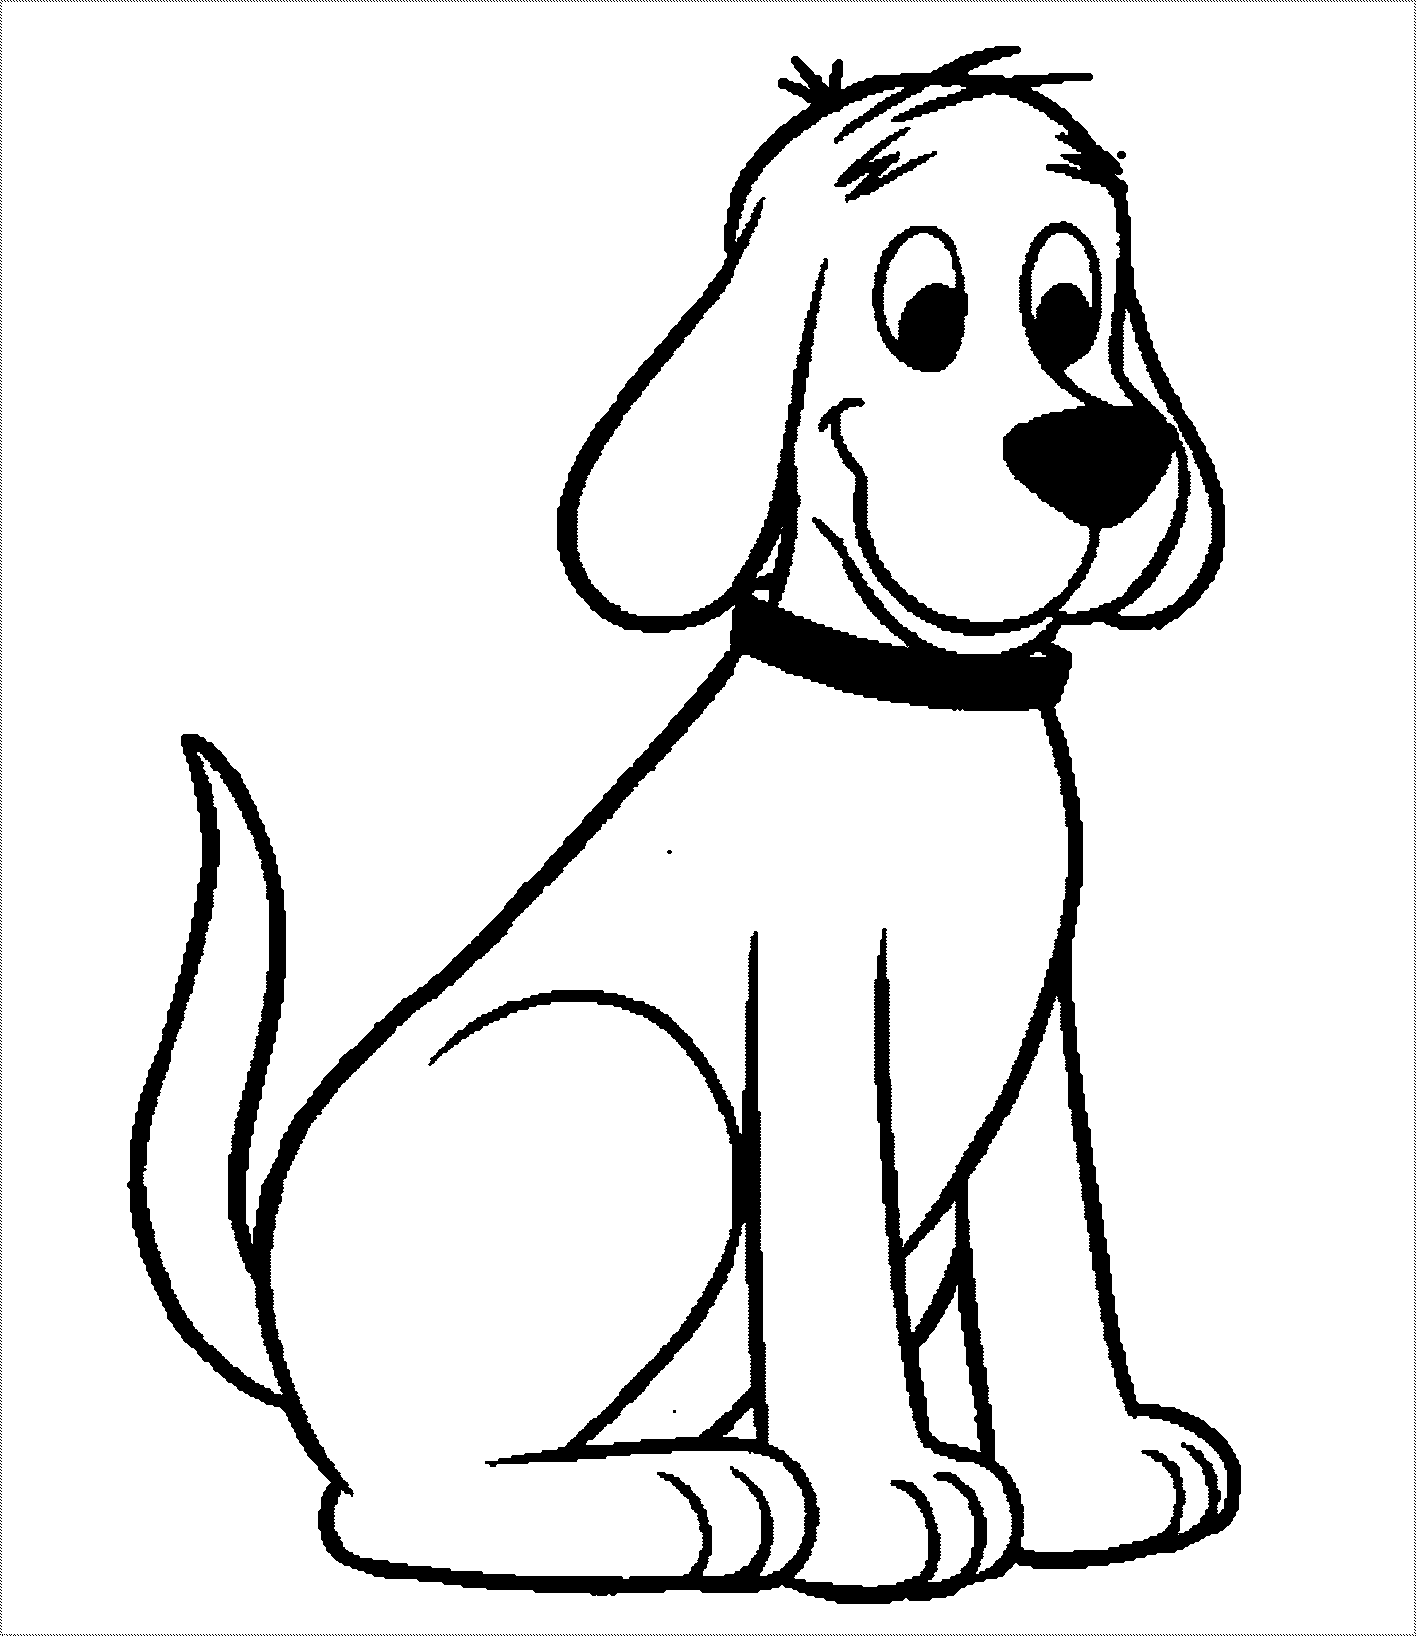 Bộ sưu tập 50 bức tranh tô màu con chó đẹp dành cho bé | Vẽ hoạt hình,  Trang tô màu, Tranh vẽ disney